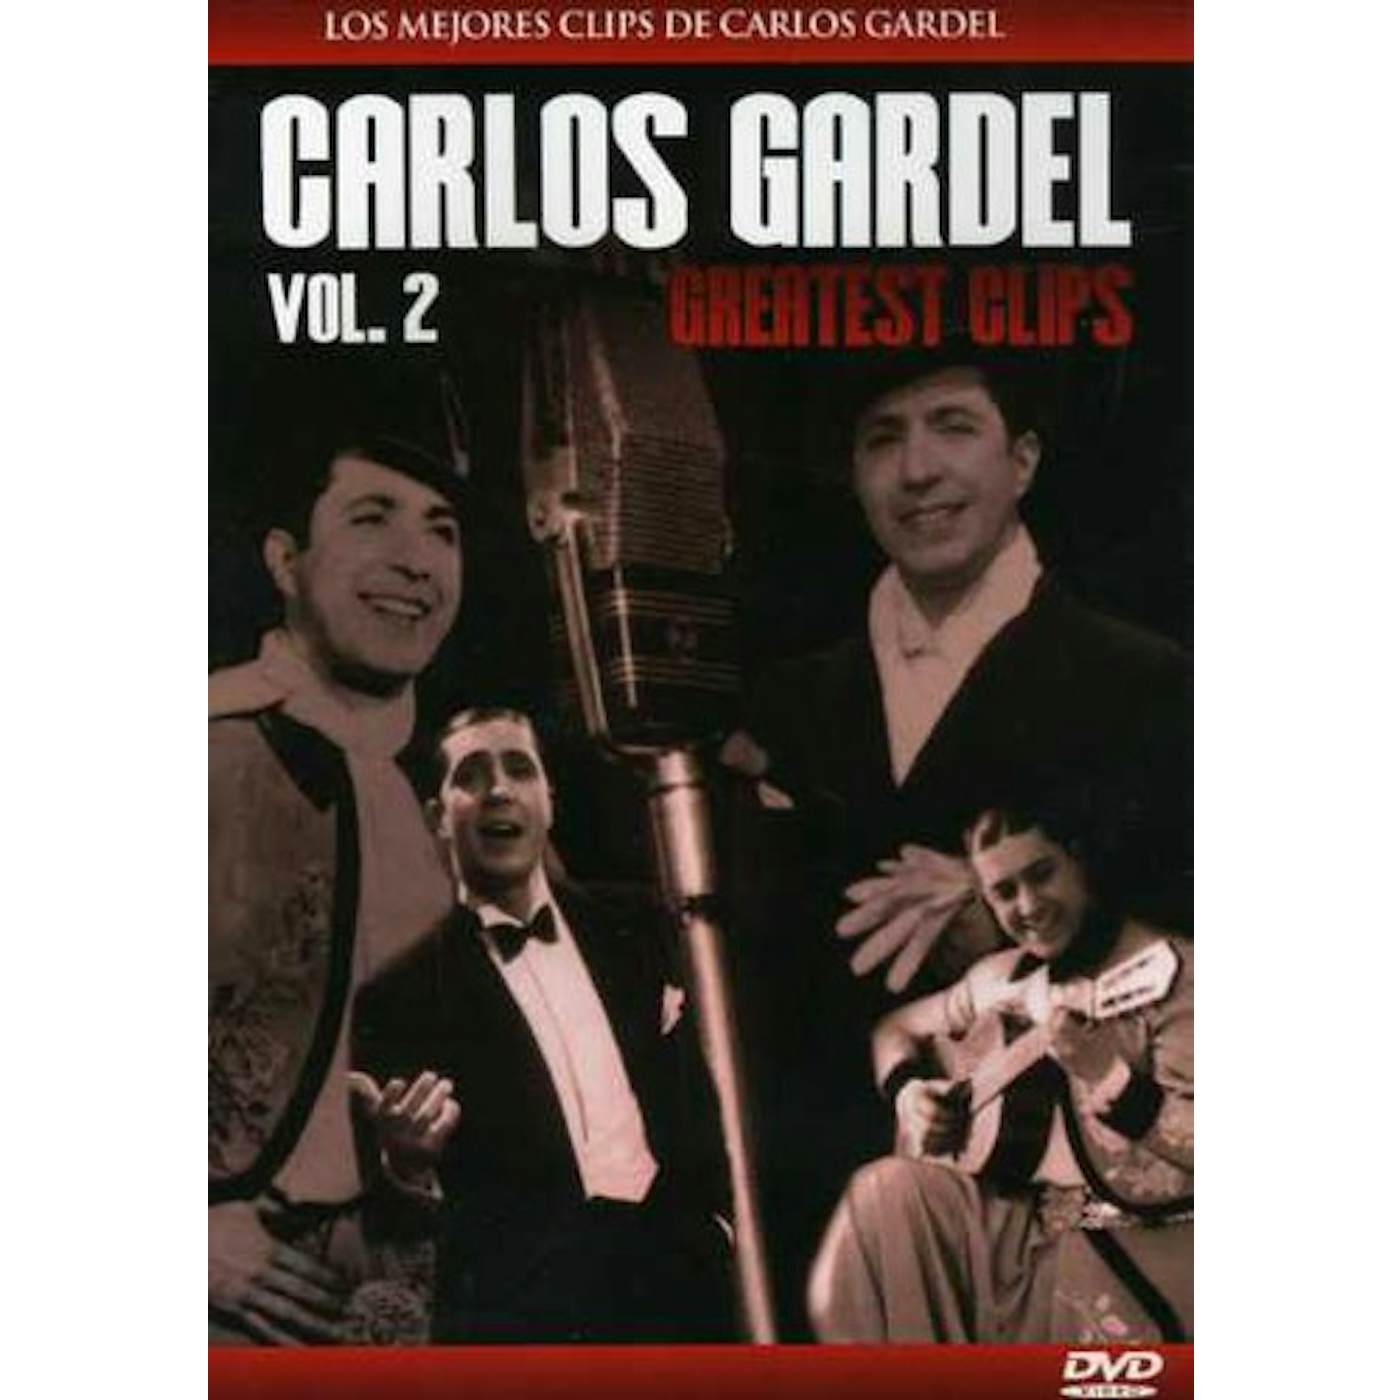 Carlos Gardel GREATEST CLIPS 2 DVD